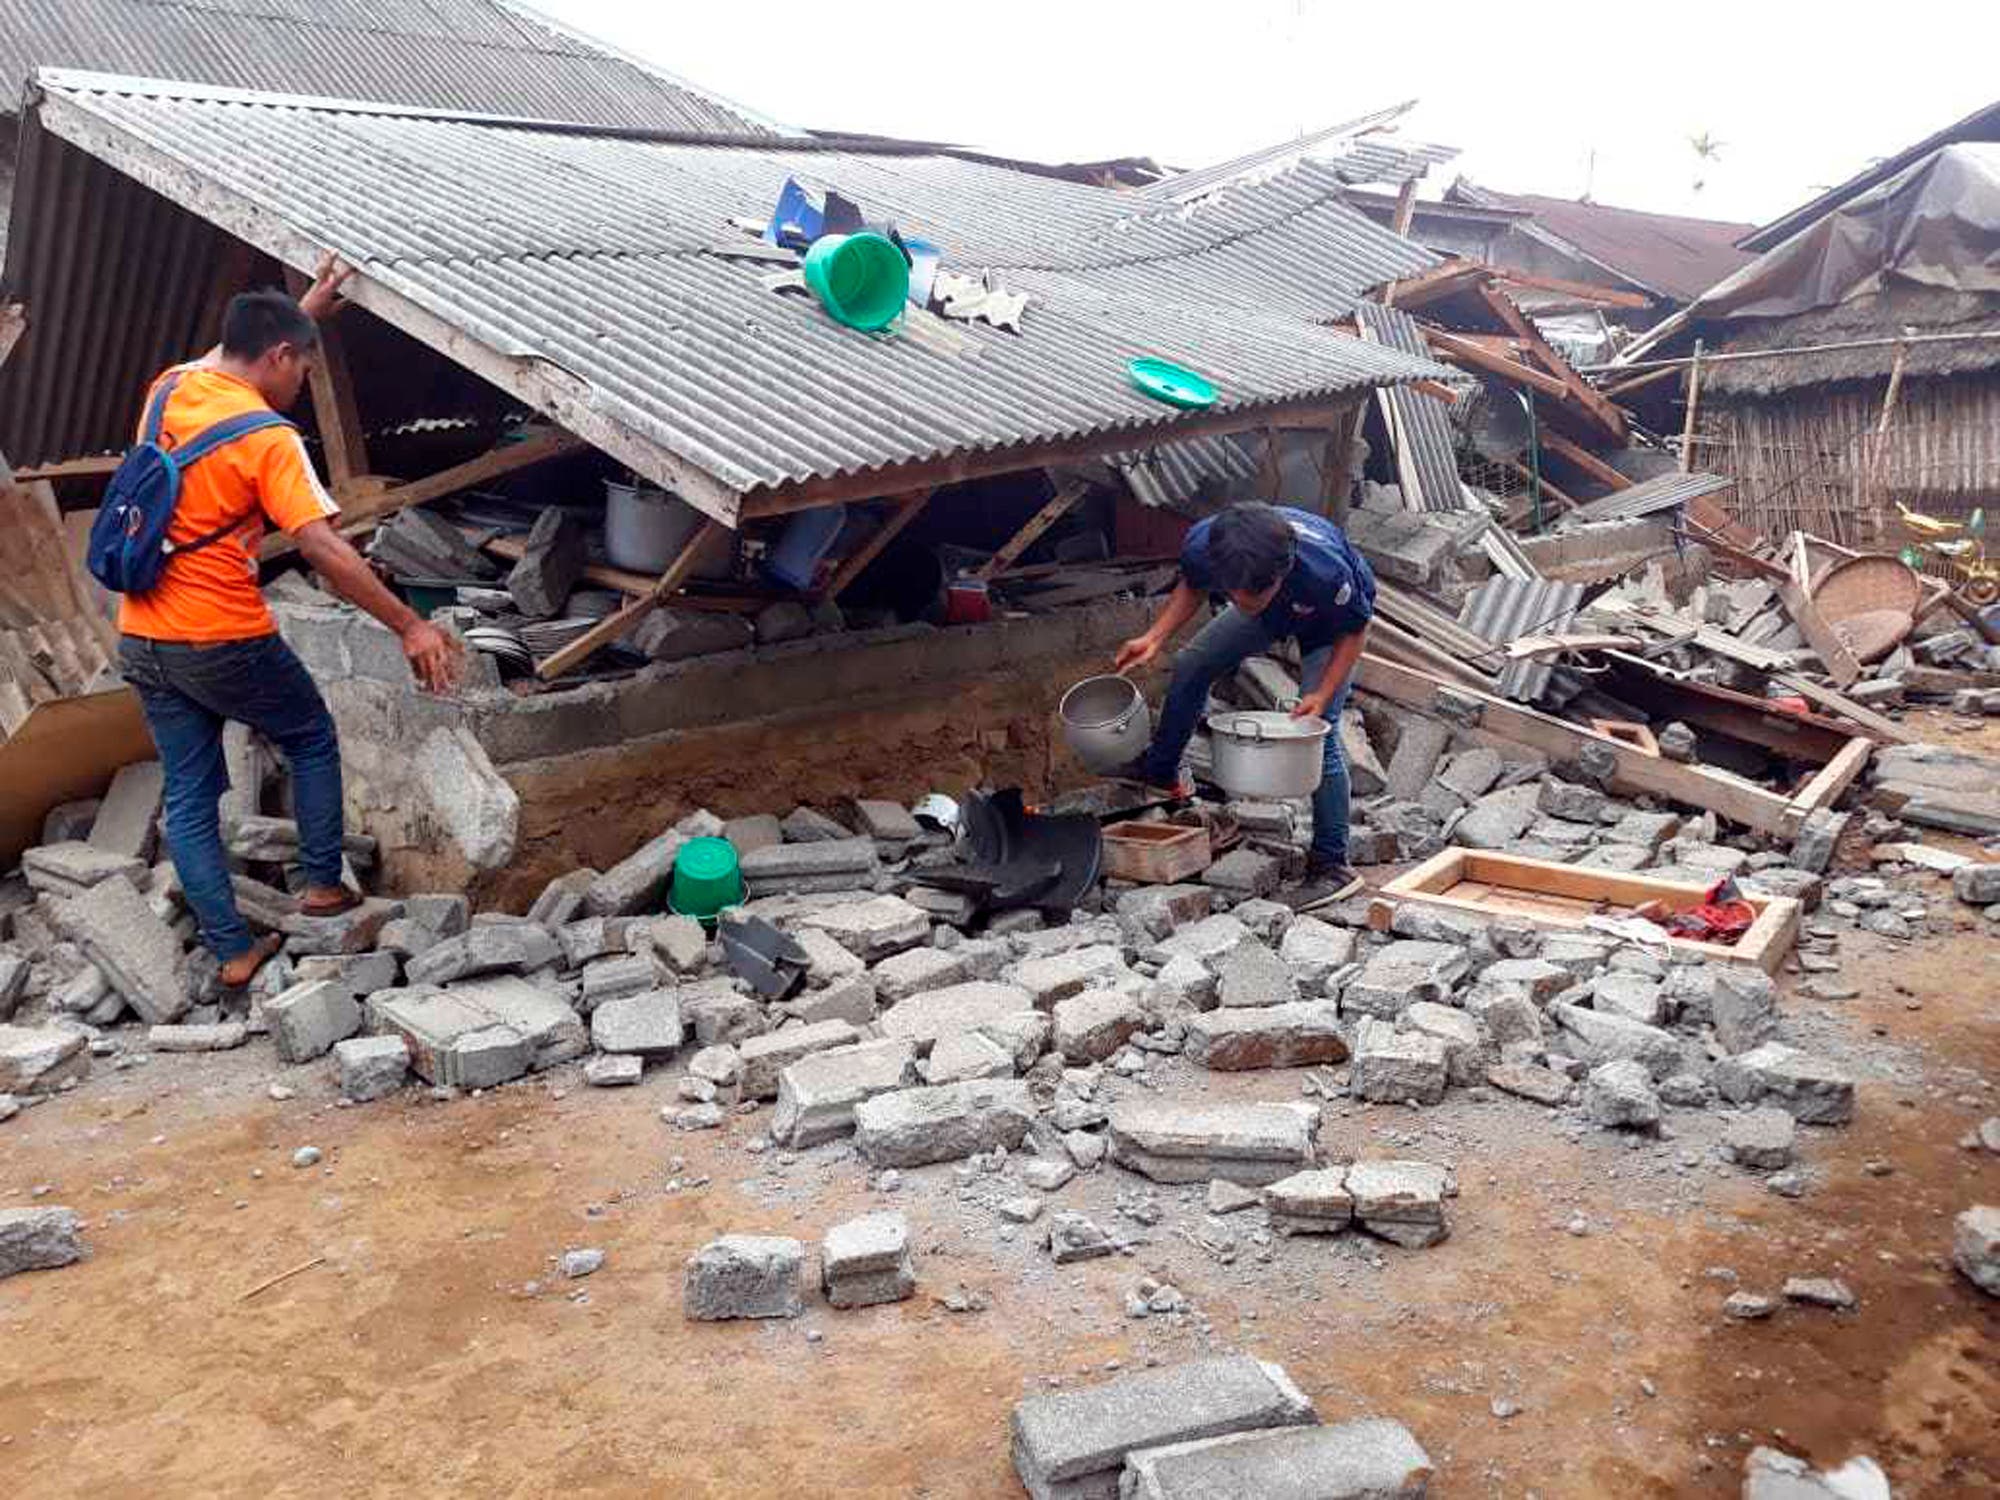 Residentes limpian los escombros dejados por un sismo que remeciÃ³ la localidad de Sajang, en Sembalun, Lombok Oriental, Indonesia, el 30 de julio de 2018. (AP Foto)